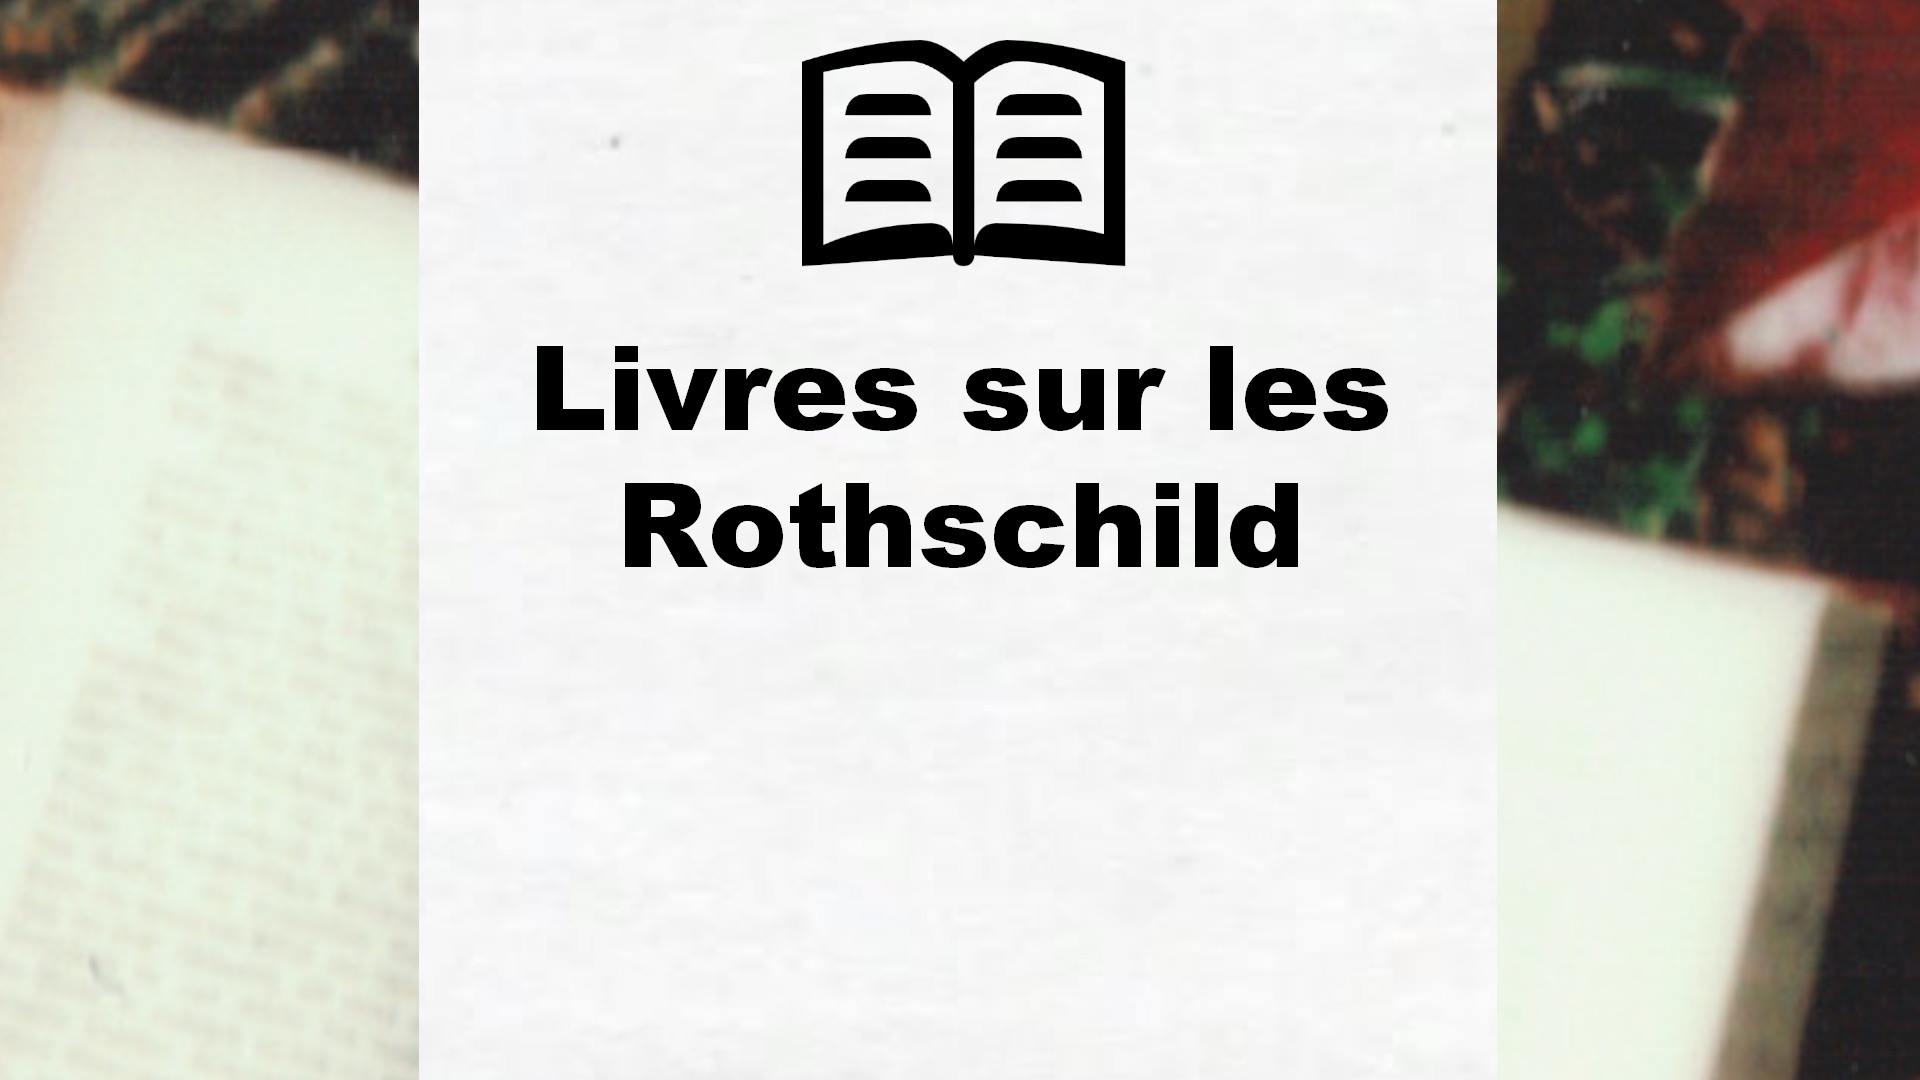 Livres sur les Rothschild